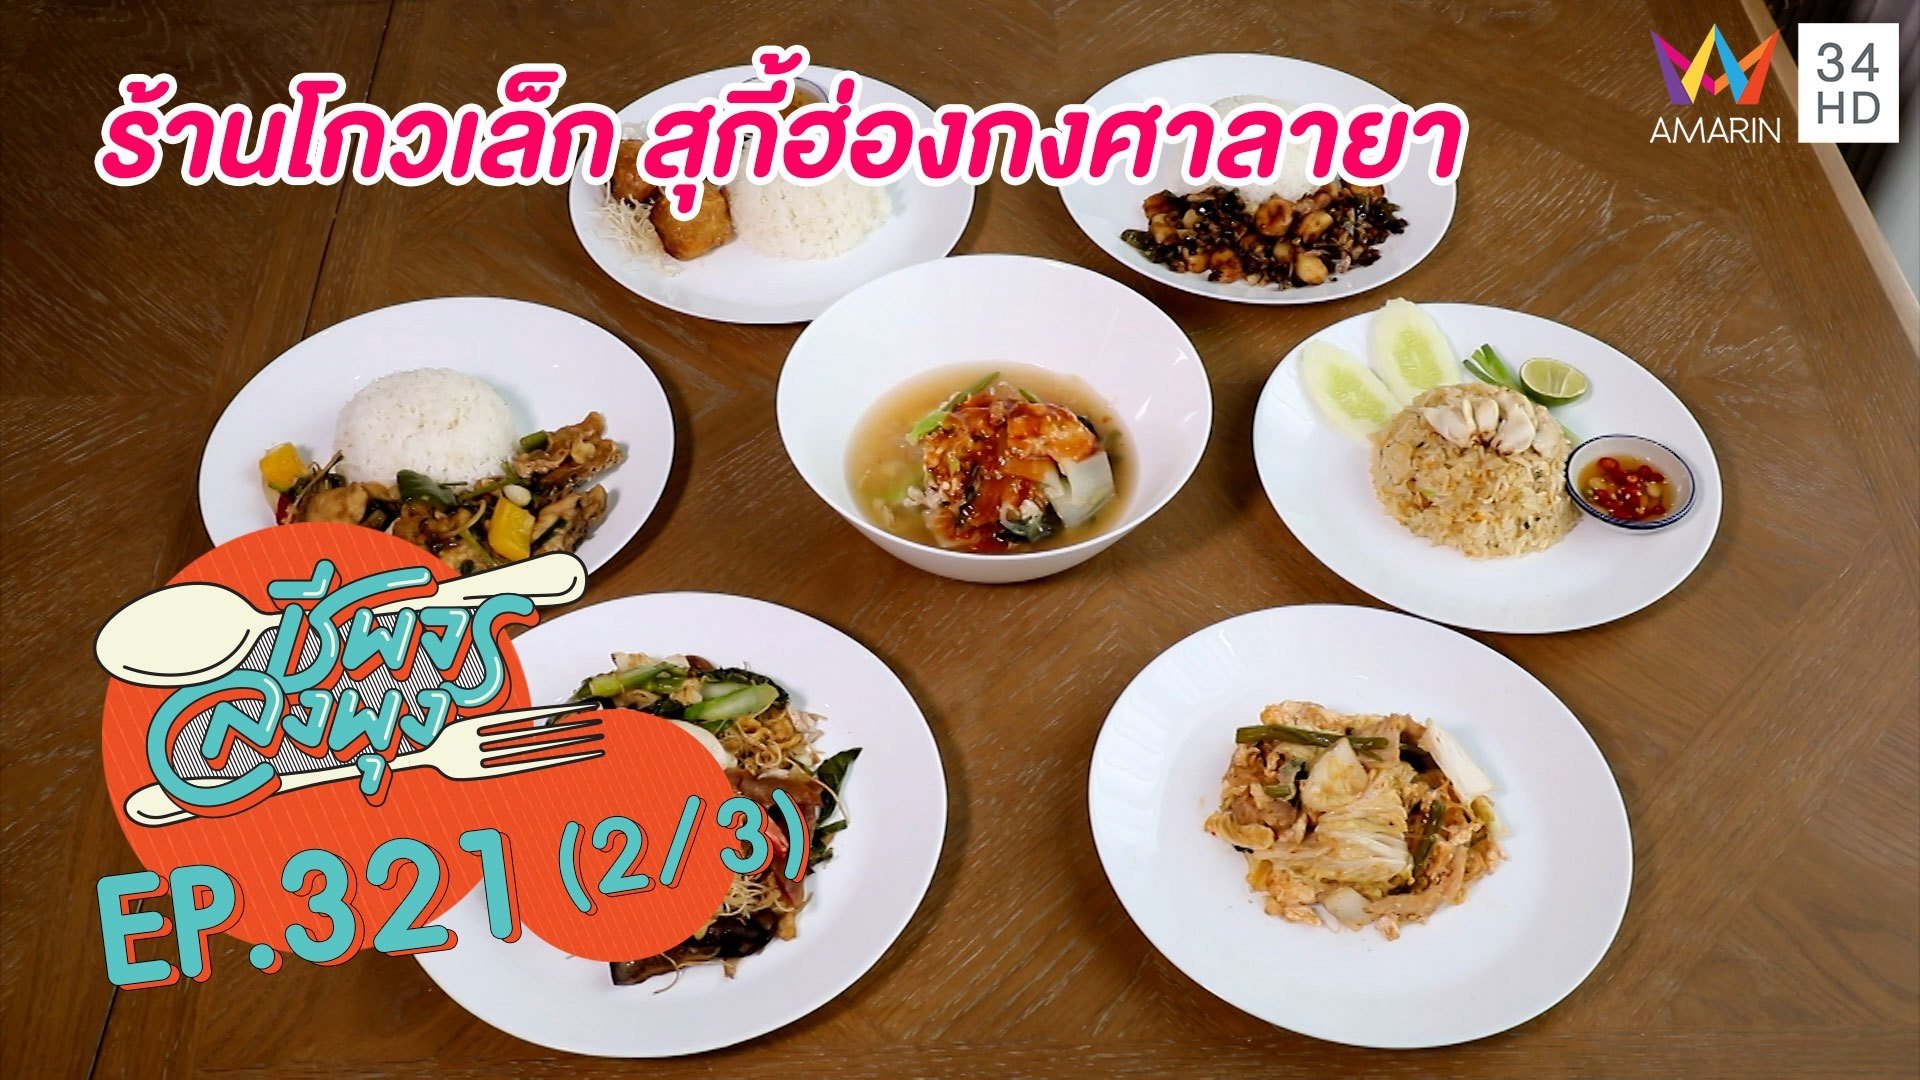 หลากเมนูราคาน่ารัก @ร้านโกวเล็ก สุกี้ฮ่องกงศาลายา | ชีพจรลงพุง | 4 ก.ย. 64 (2/3) | AMARIN TVHD34